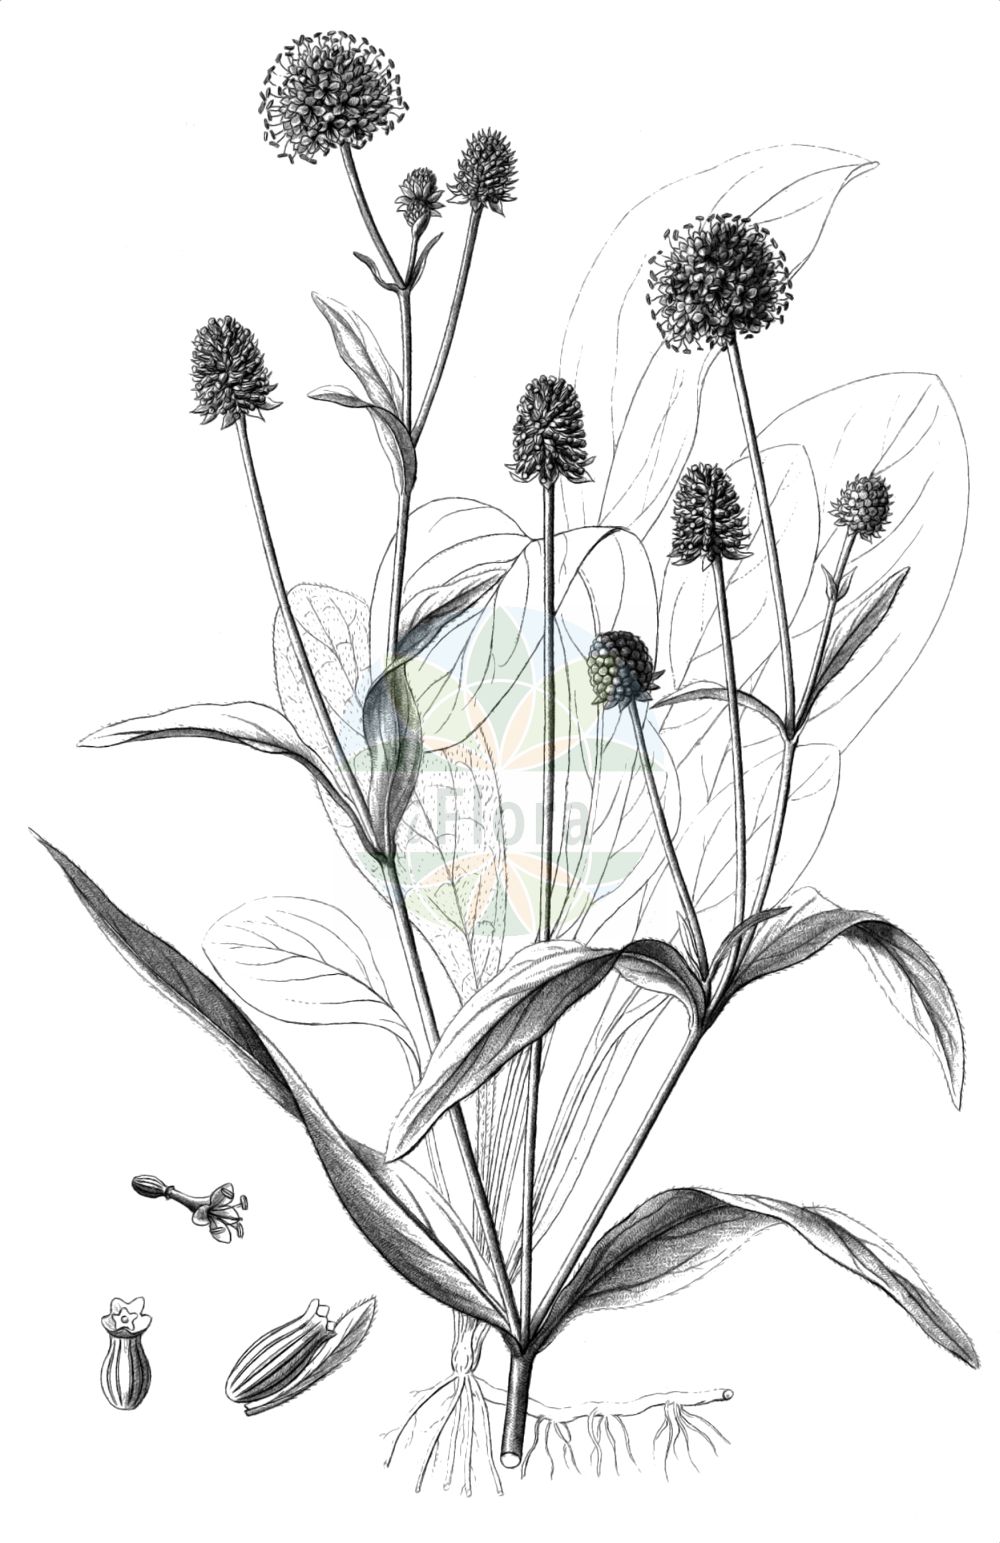 Historische Abbildung von Succisella inflexa (Sumpfabbiß - Southern Succisella). Das Bild zeigt Blatt, Bluete, Frucht und Same. ---- Historical Drawing of Succisella inflexa (Sumpfabbiß - Southern Succisella). The image is showing leaf, flower, fruit and seed.(Succisella inflexa,Sumpfabbiß,Southern Succisella,Scabiosa australis,Scabiosa inflexa,Succisa australis,Succisa inflexa,Succisella inflexa,Sumpfabbiss,Östlicher Teufelsabbiss,Southern Succisella,Devil's Bit,Succisella,Teufelsabbiß,Caprifoliaceae,Geißblattgewächse,Honeysuckle family,Blatt,Bluete,Frucht,Same,leaf,flower,fruit,seed,Reichenbach (1823-1832))